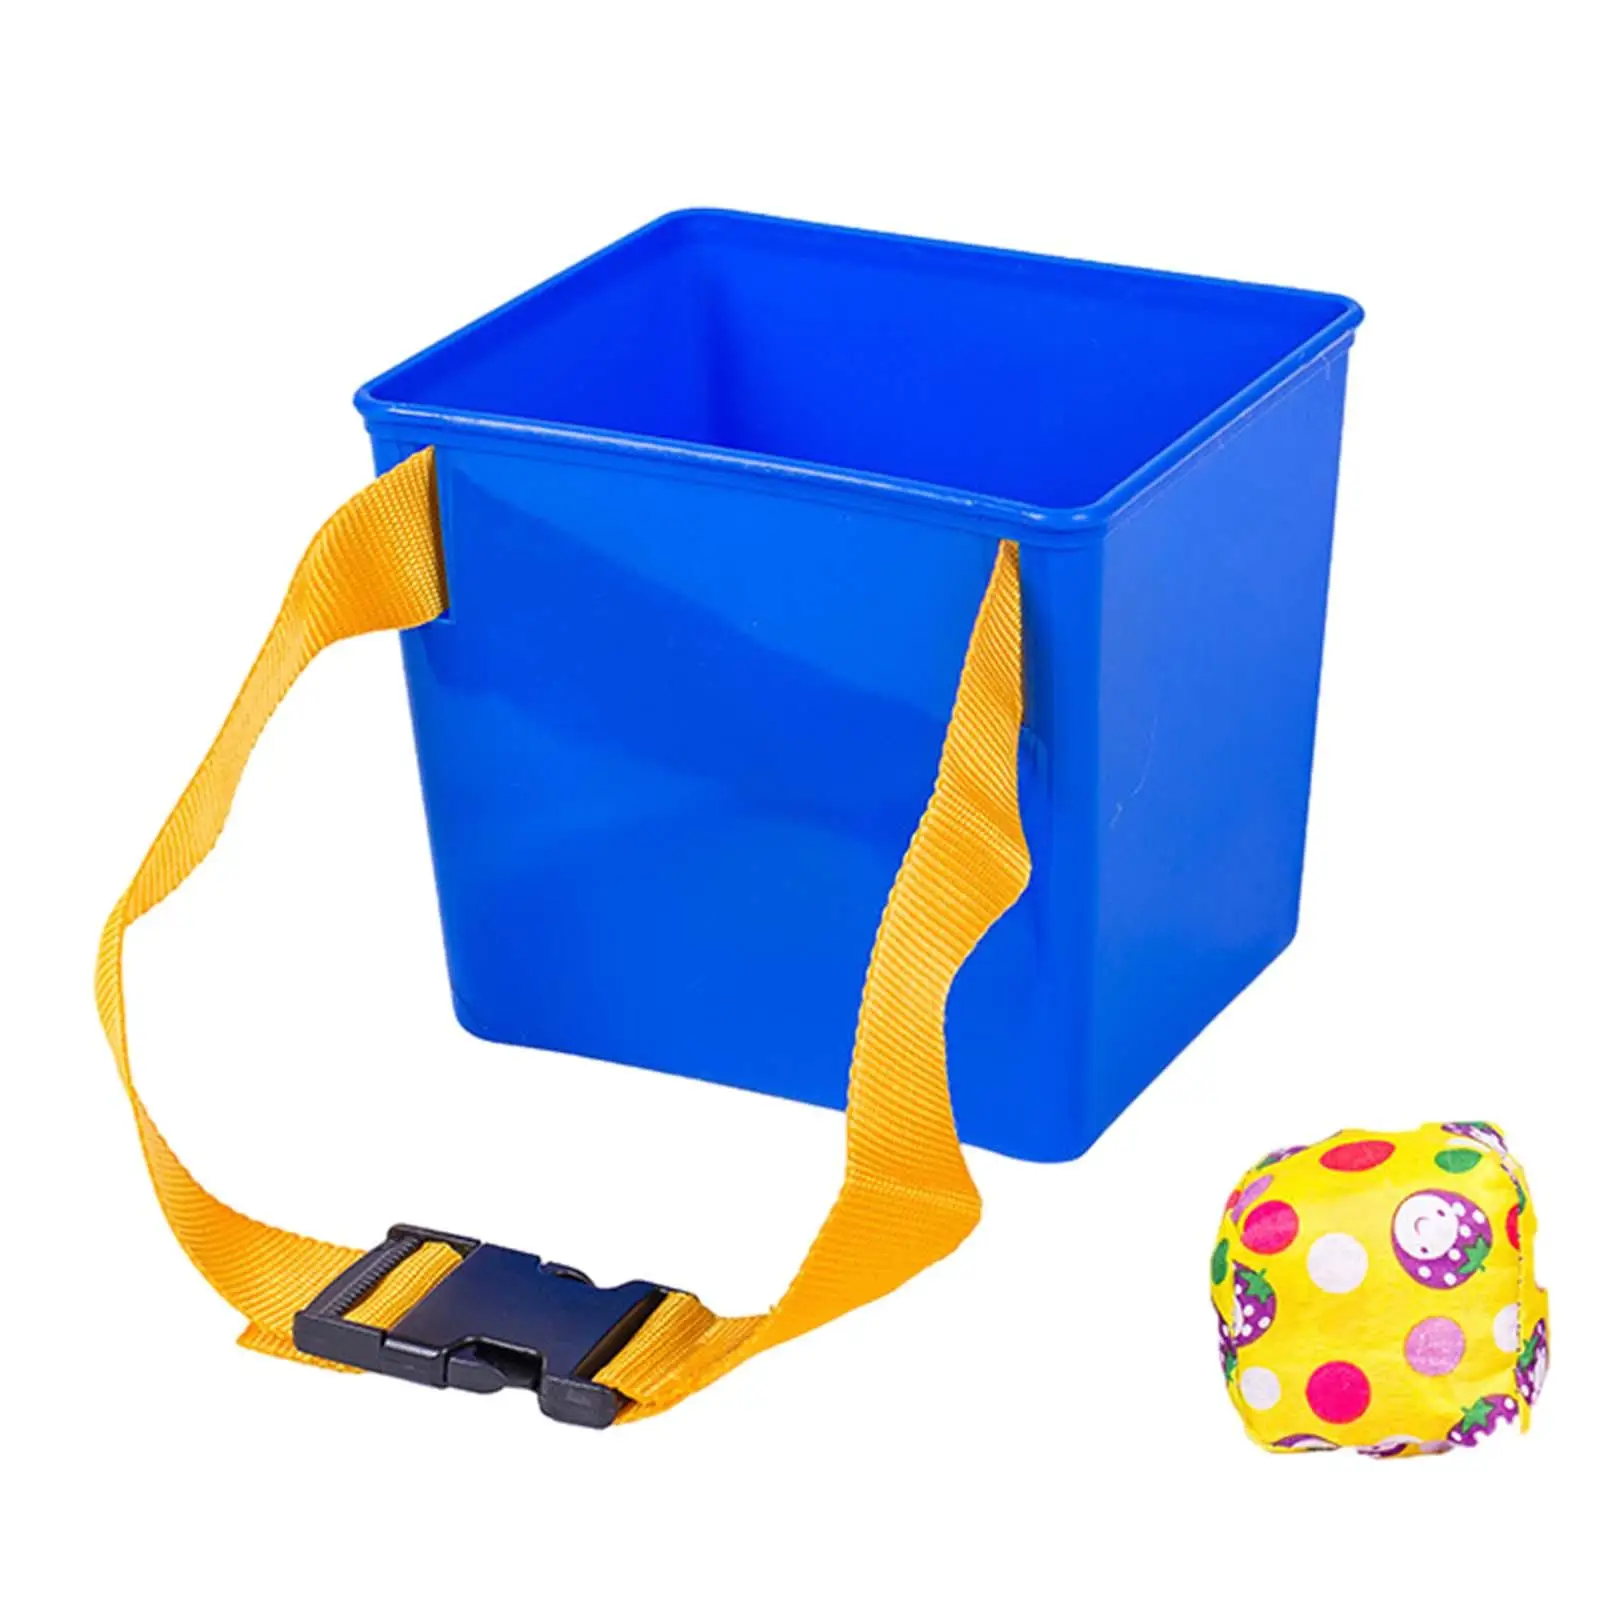 Throw Sandbag Sports Toss Game Indoor Outdoor Toys Throw Sand Bags into Bucket for Games Kindergarten Garden Coordination